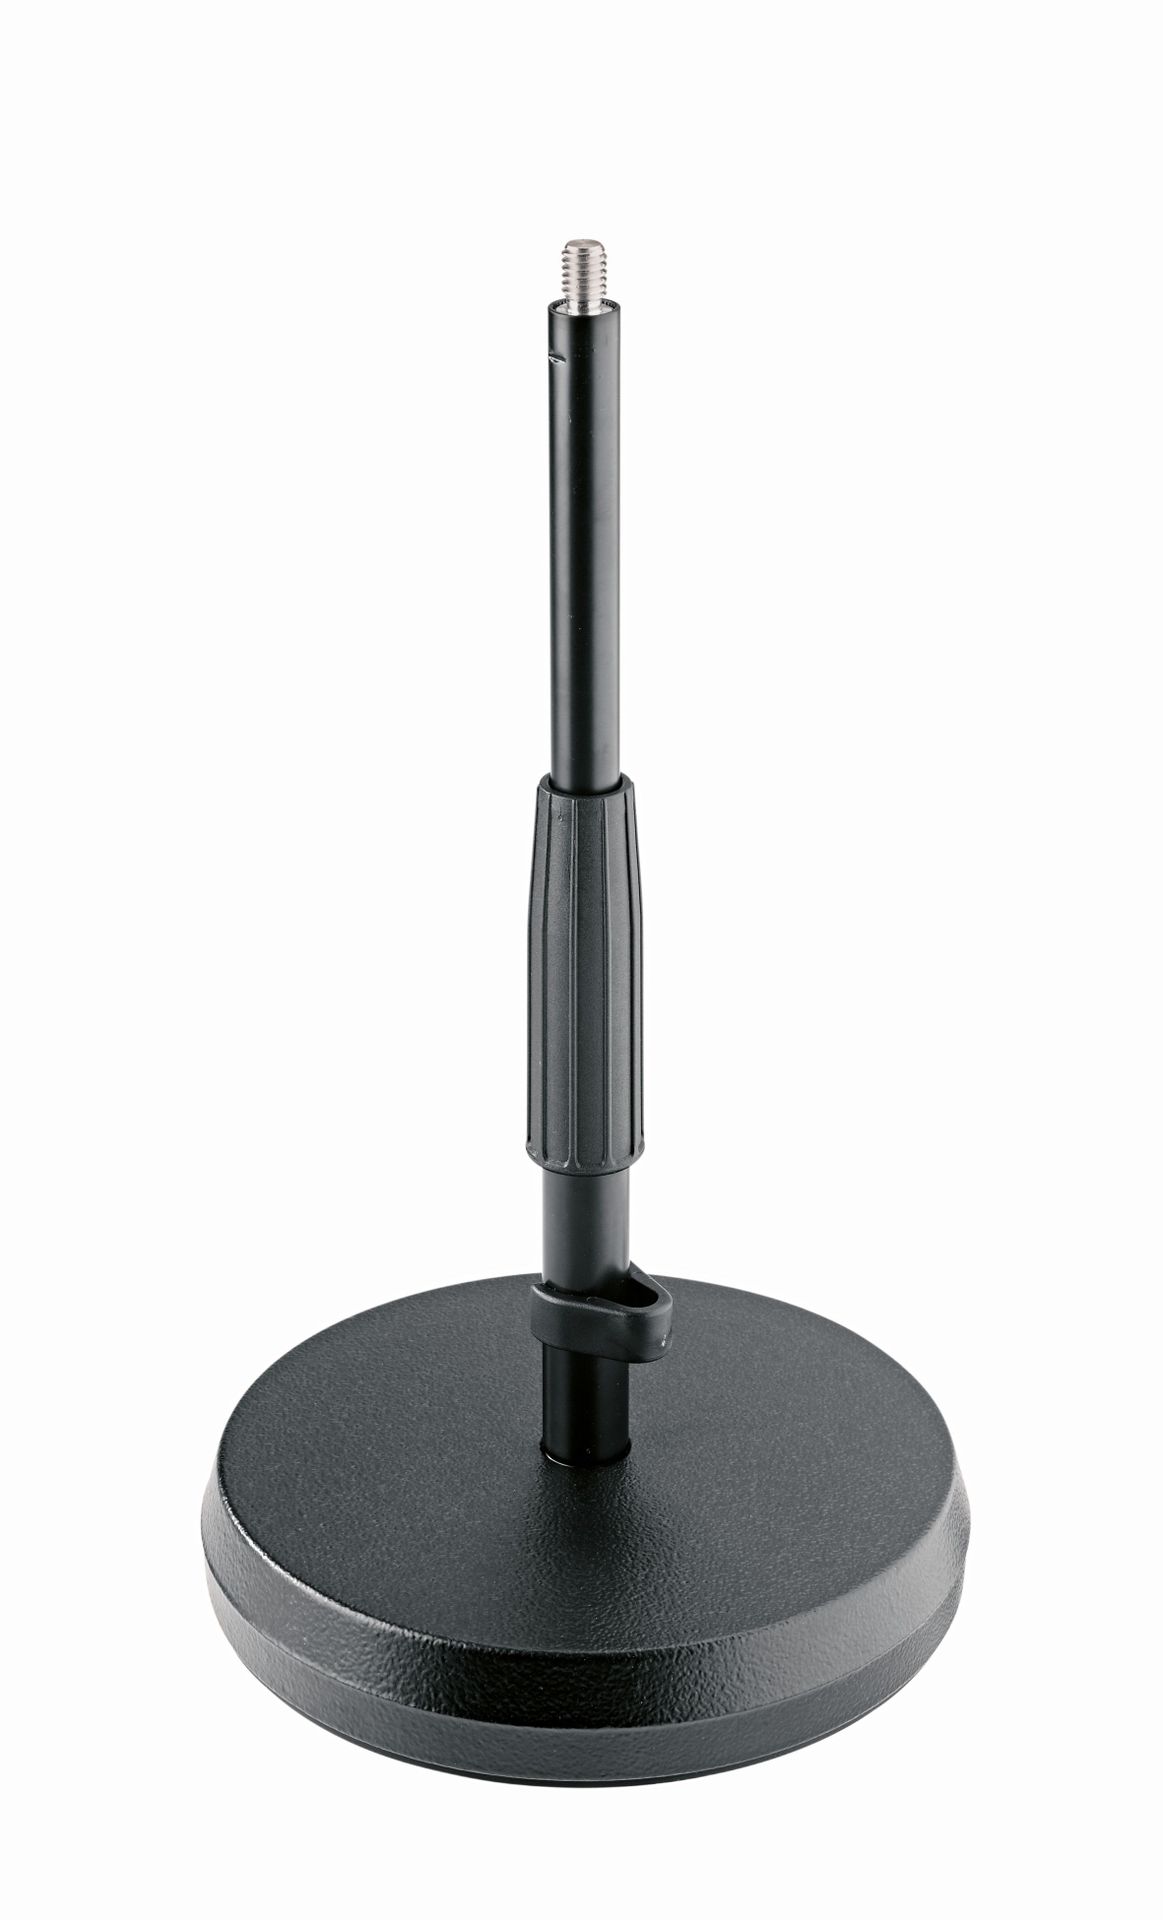 K&M 23325 Tisch-/Bodenmikrofonstativ mit Gussrundsockel, schwarz